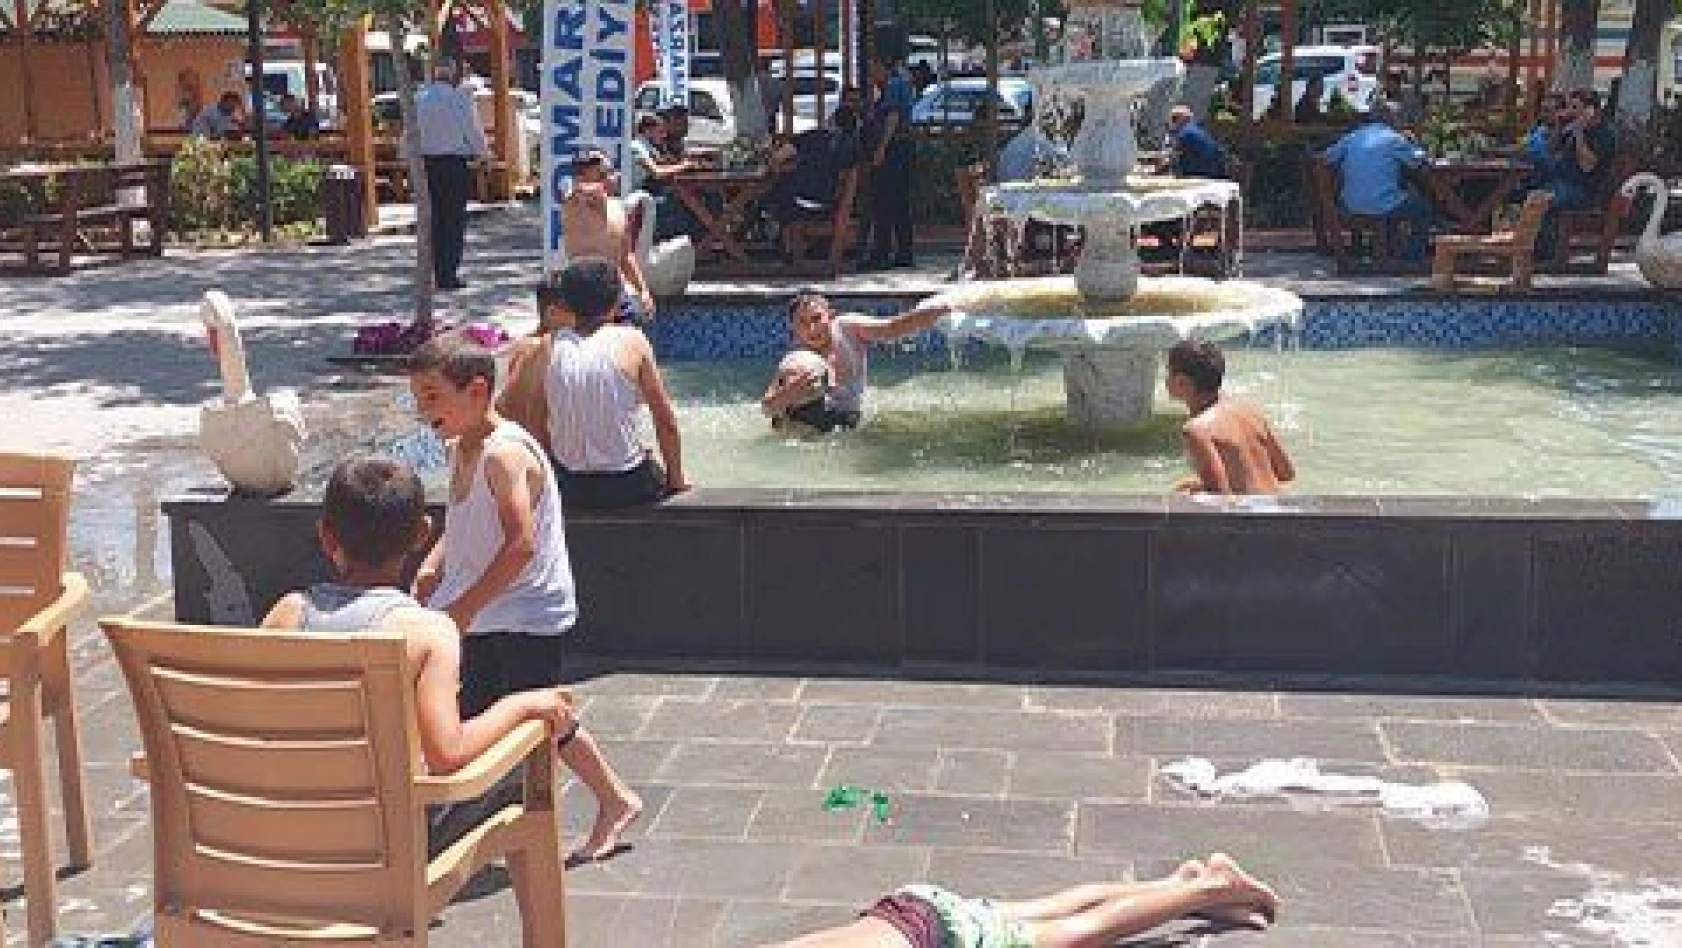 Sıcaktan bunalan çocuklar çareyi süs havuzunda buldu